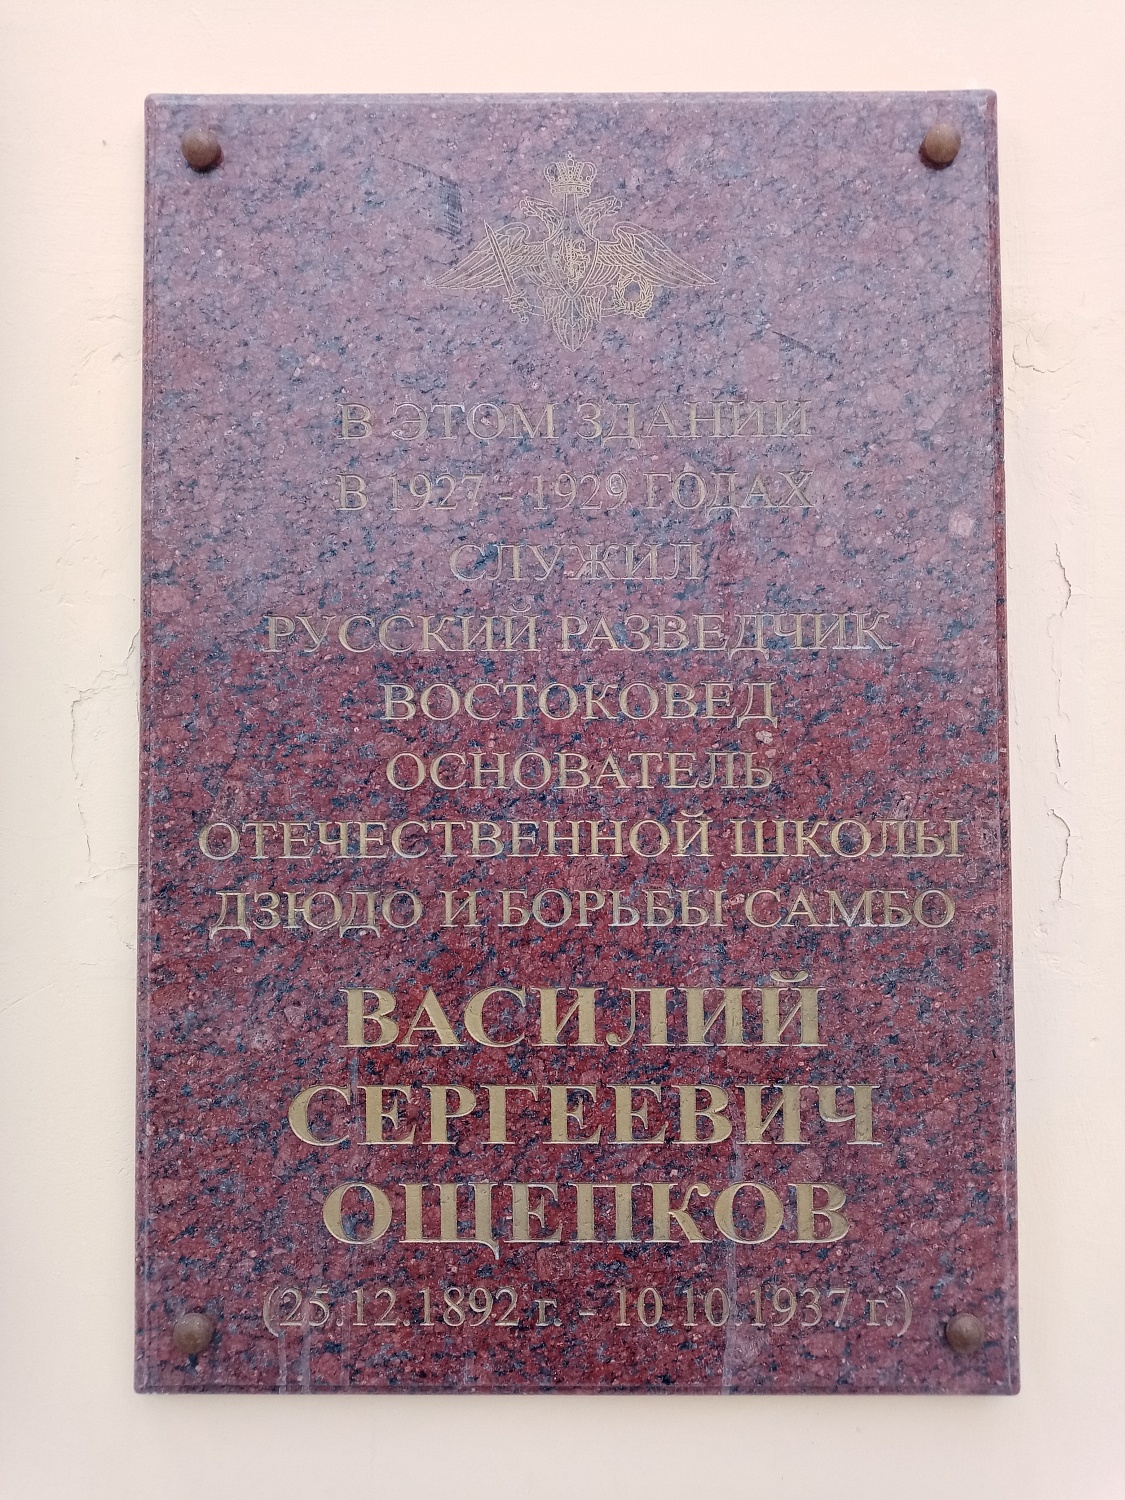 Мемориальная доска памяти основателя школы САМБО Василию Ощепкову установленная на здании Дома офицеров.